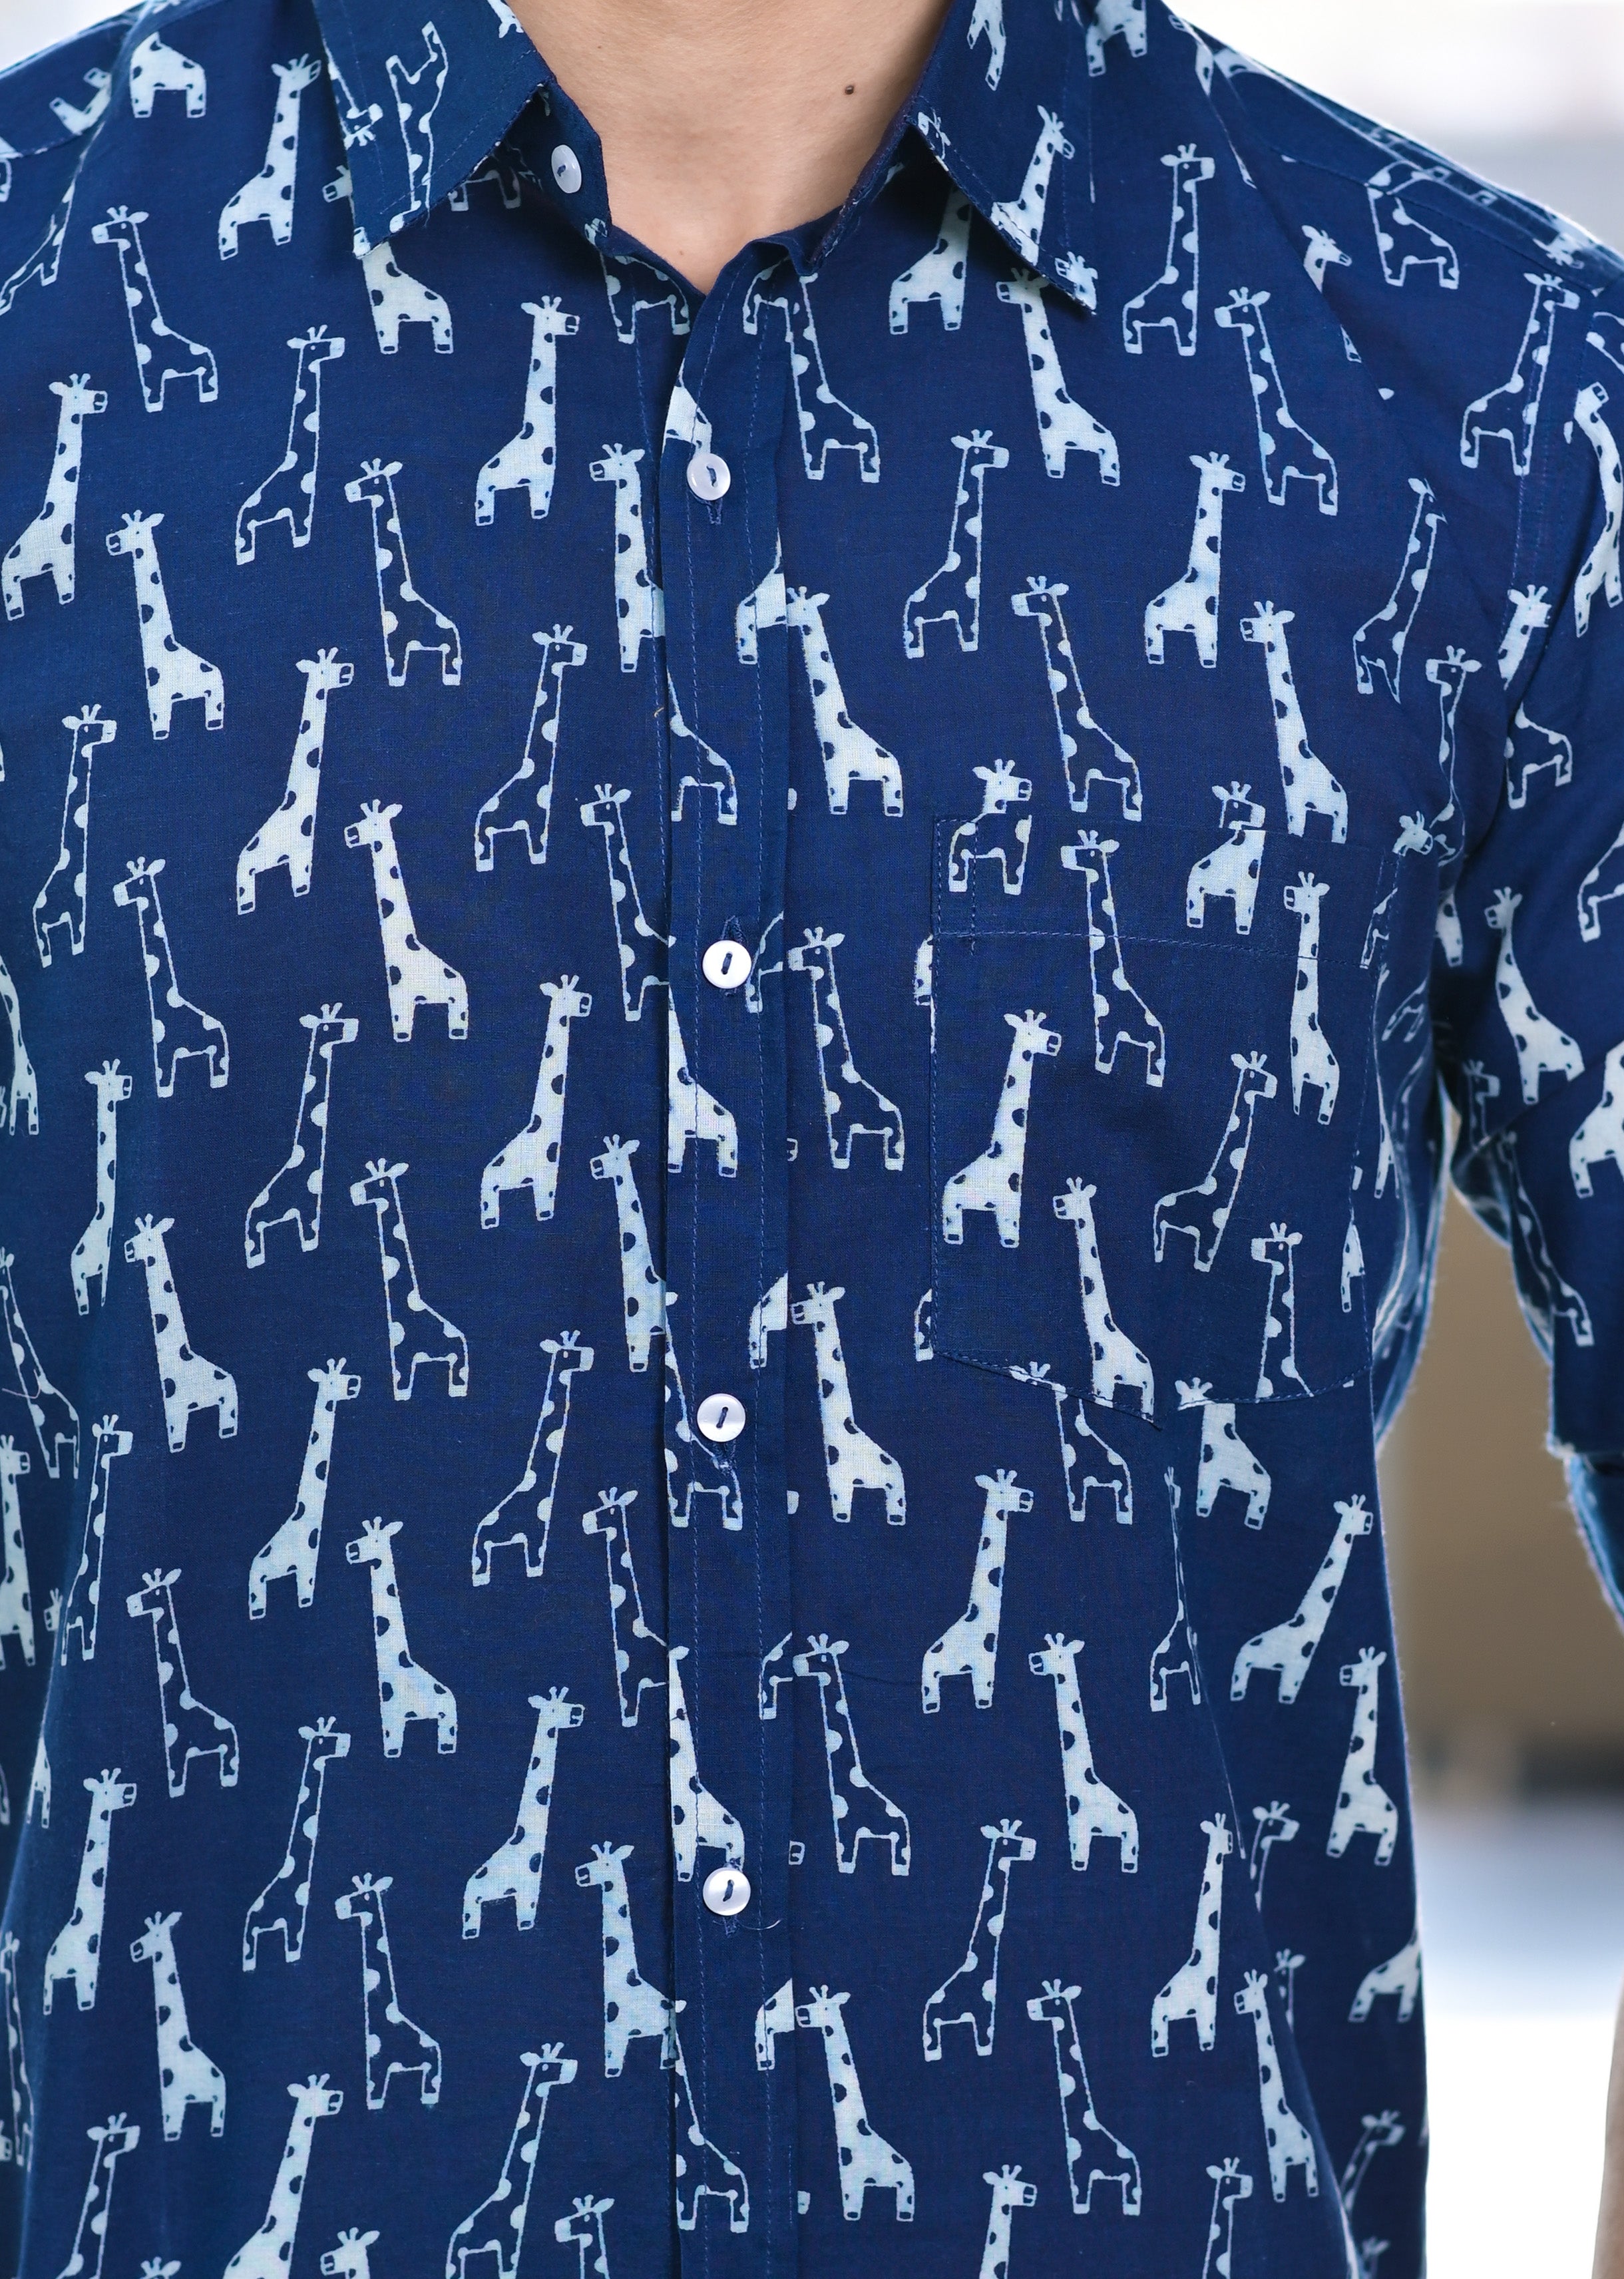 Bagru Giraffe Print Indigo Cotton Shirt